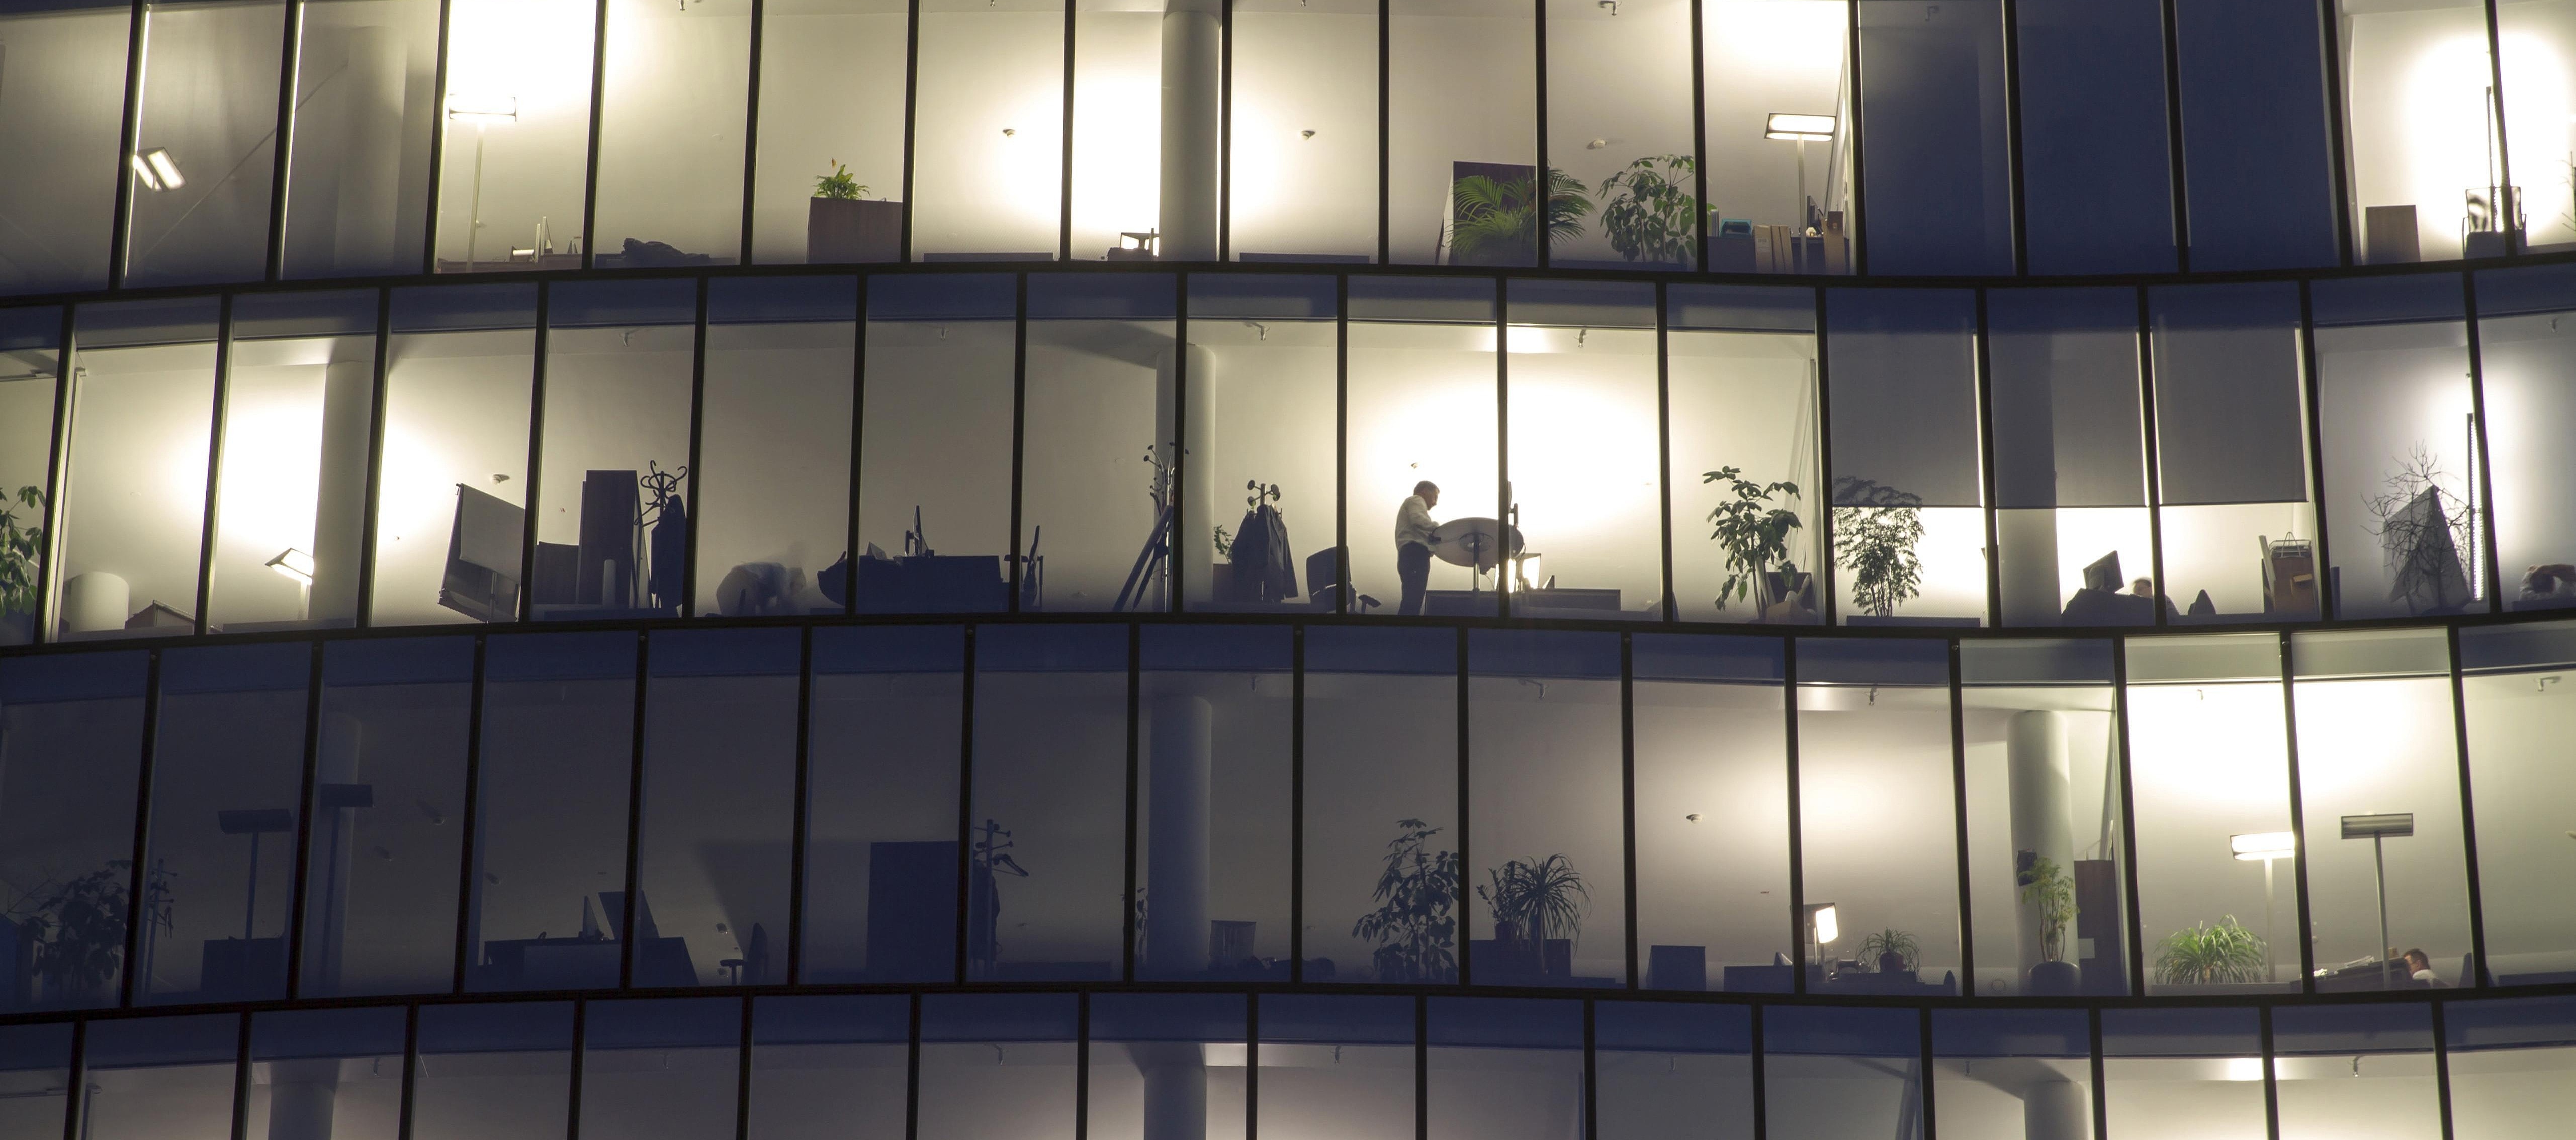 Blick auf eine mehrstöckige Fensterfront, hinter der vereinzelt Personen vor oder an ihren Arbeitsplätzen zu sehen sind.